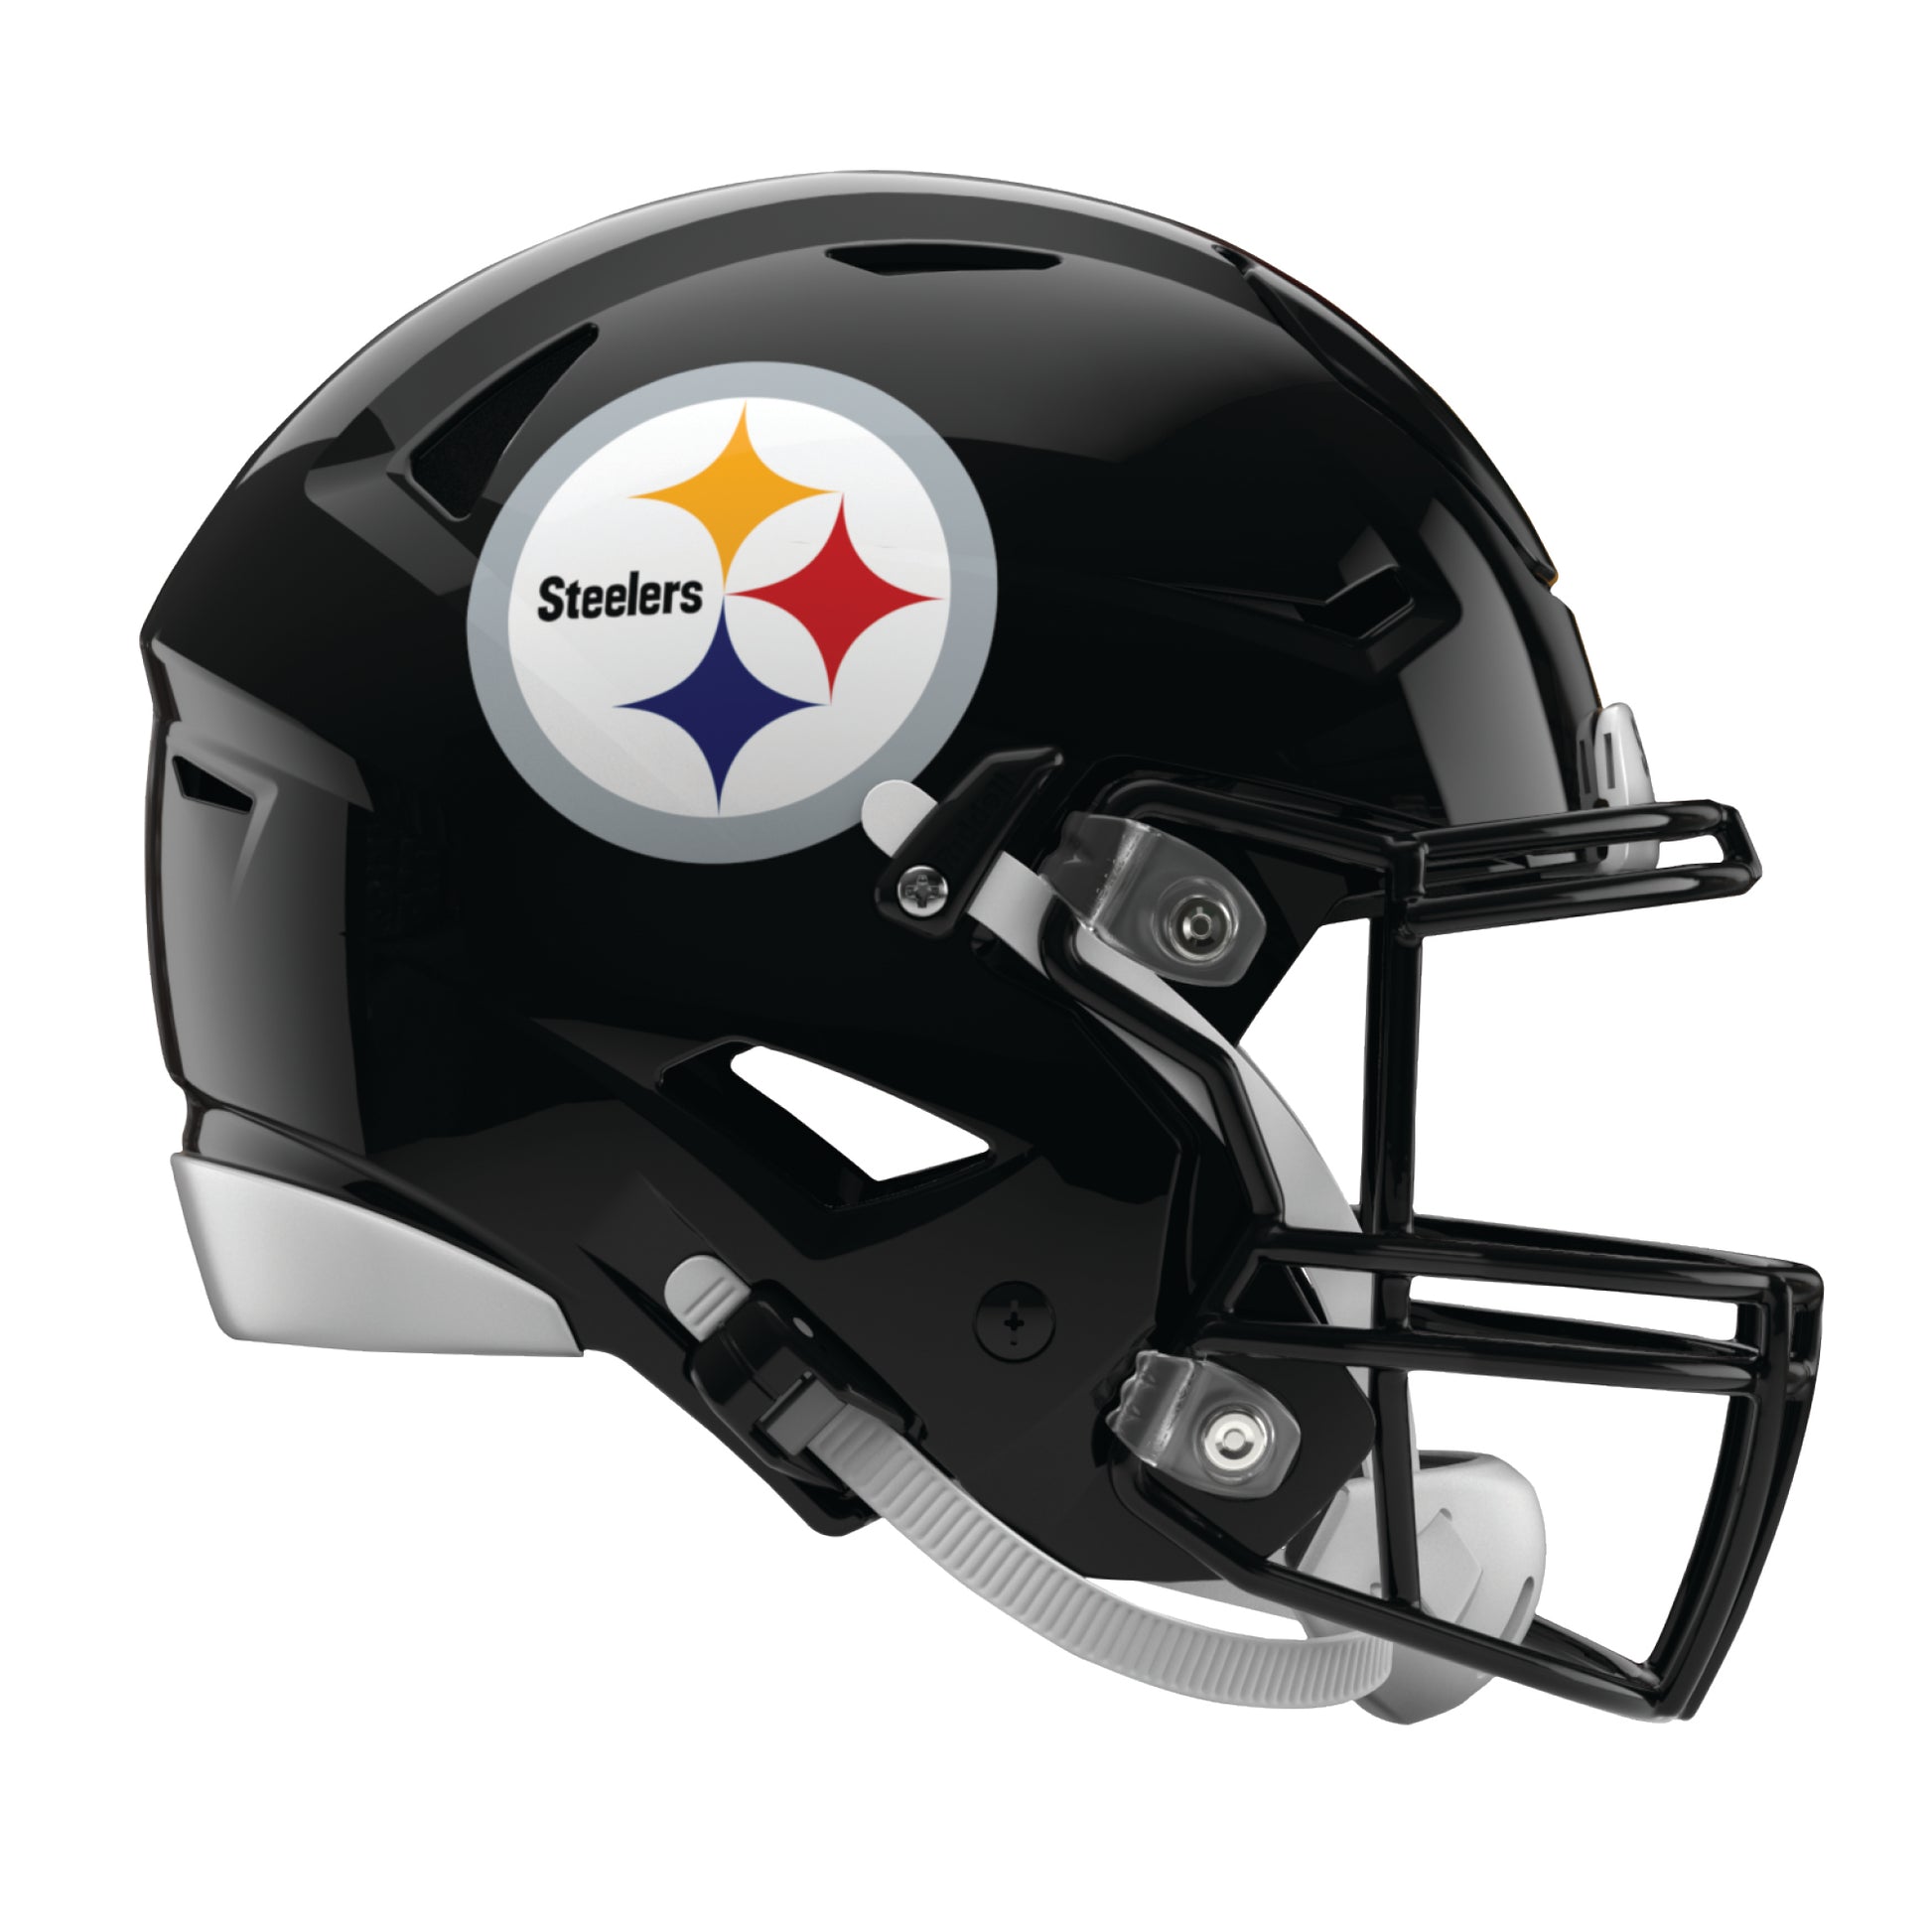 Pittsburgh Steelers  Pittsburgh steelers helmet, Pittsburgh